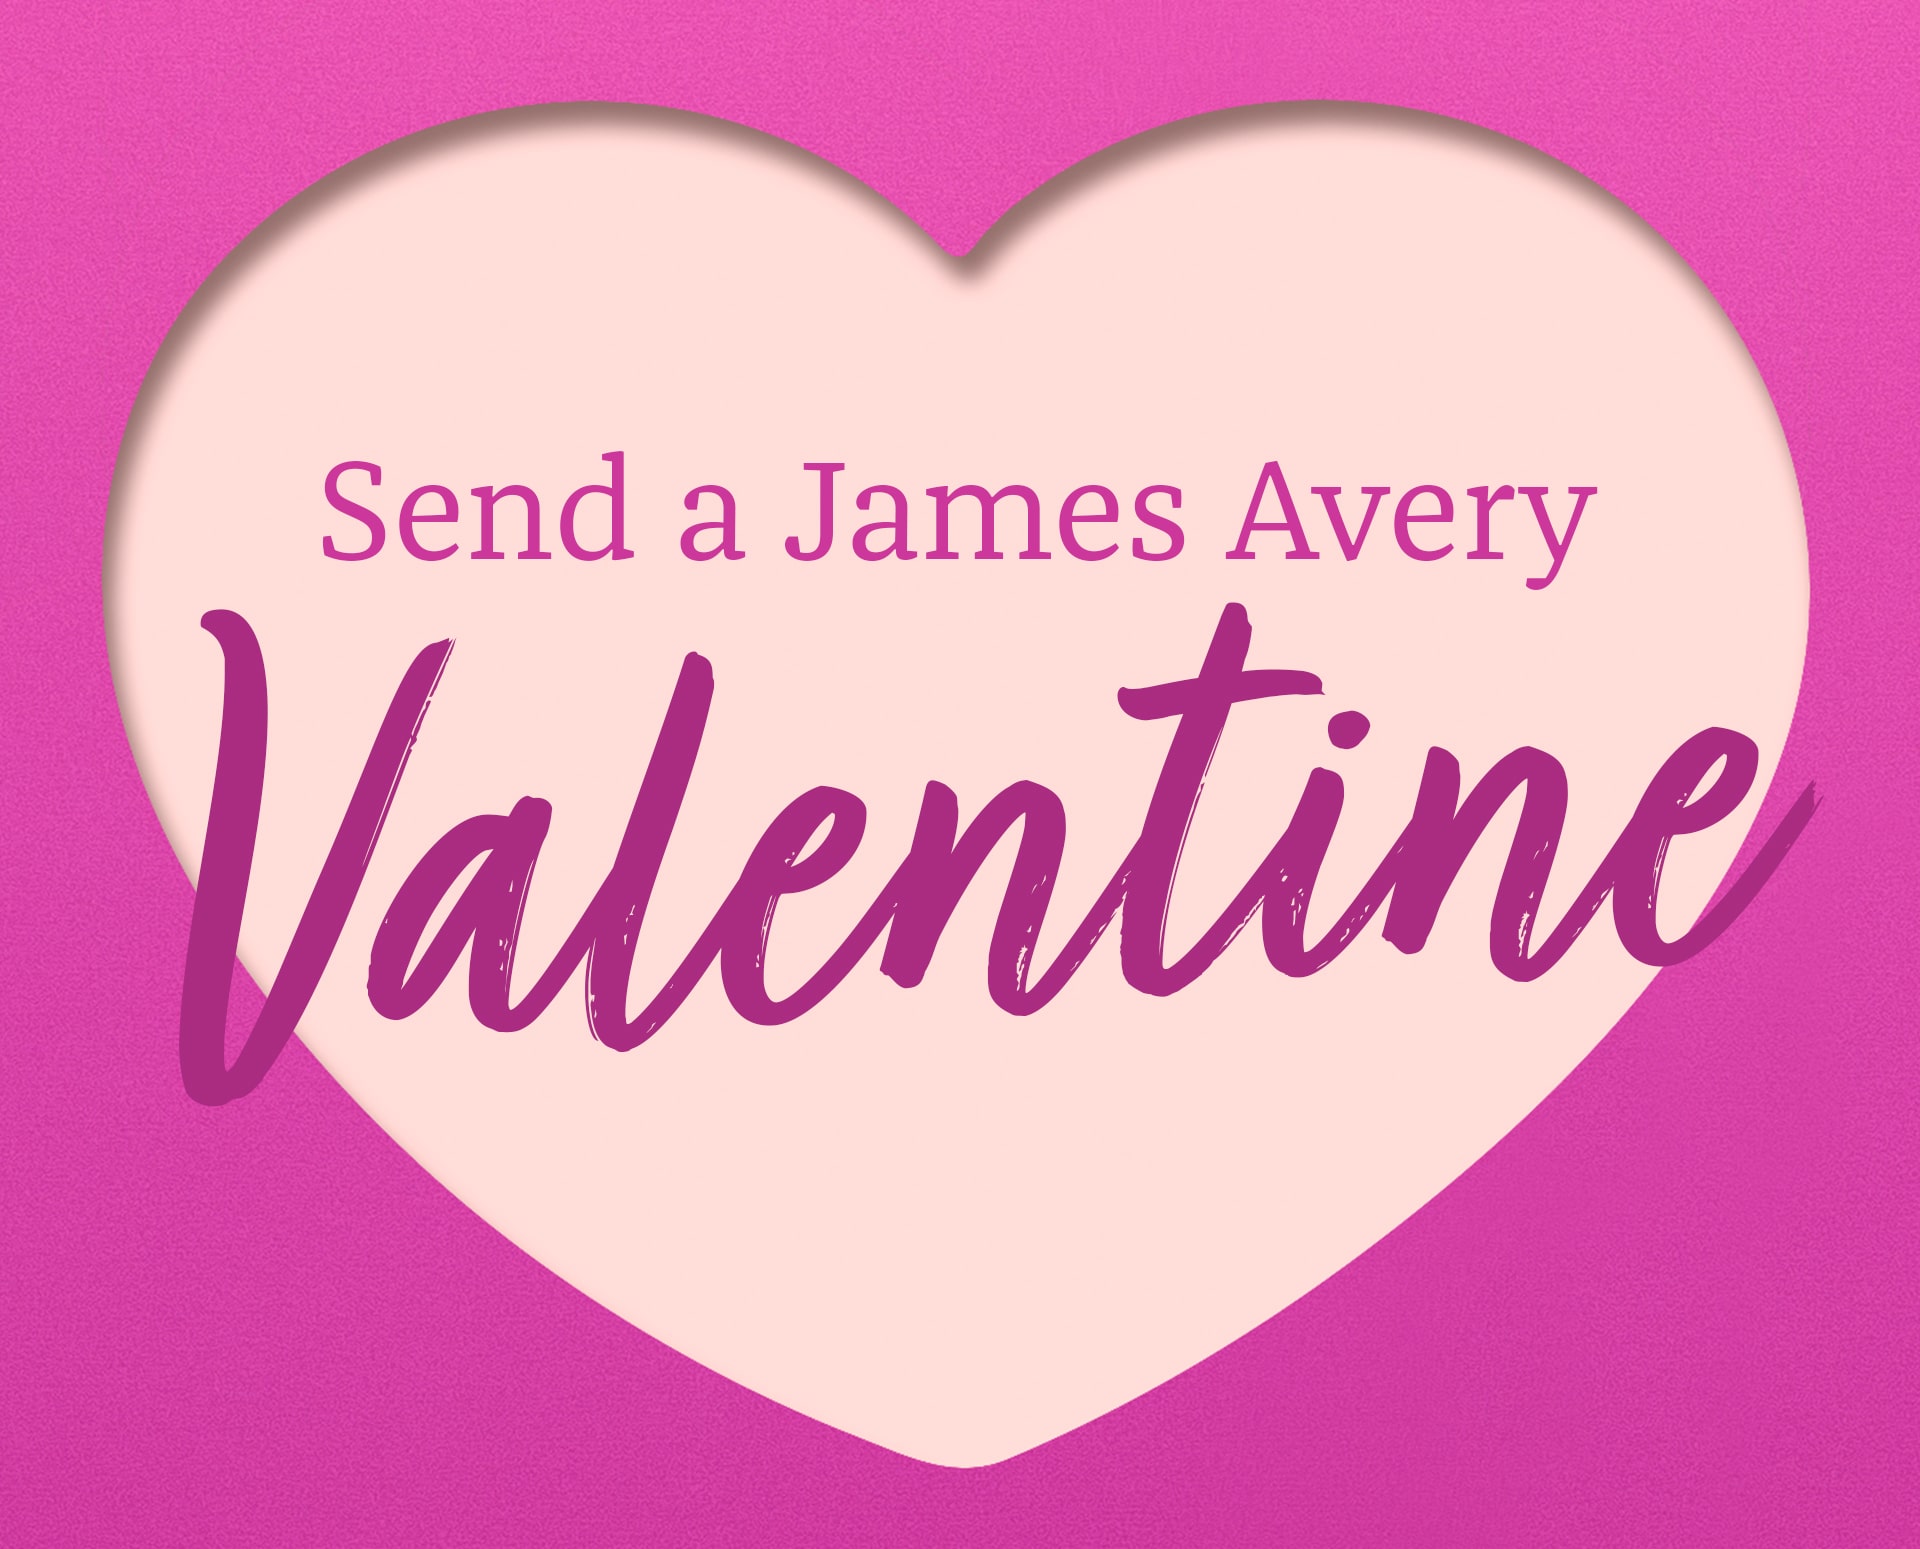 Send a James Avery Valentine